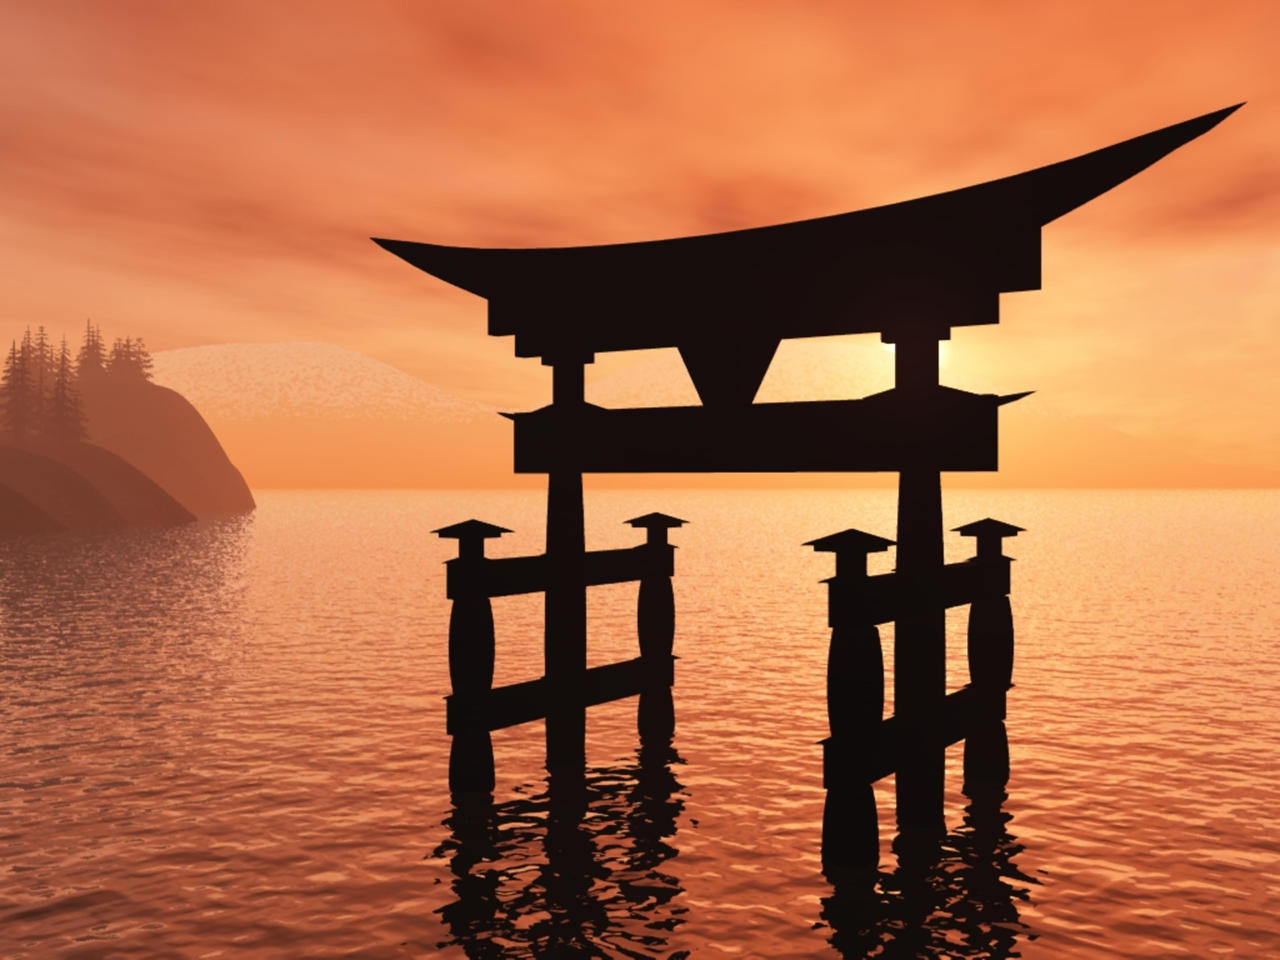 Itsukushima torii